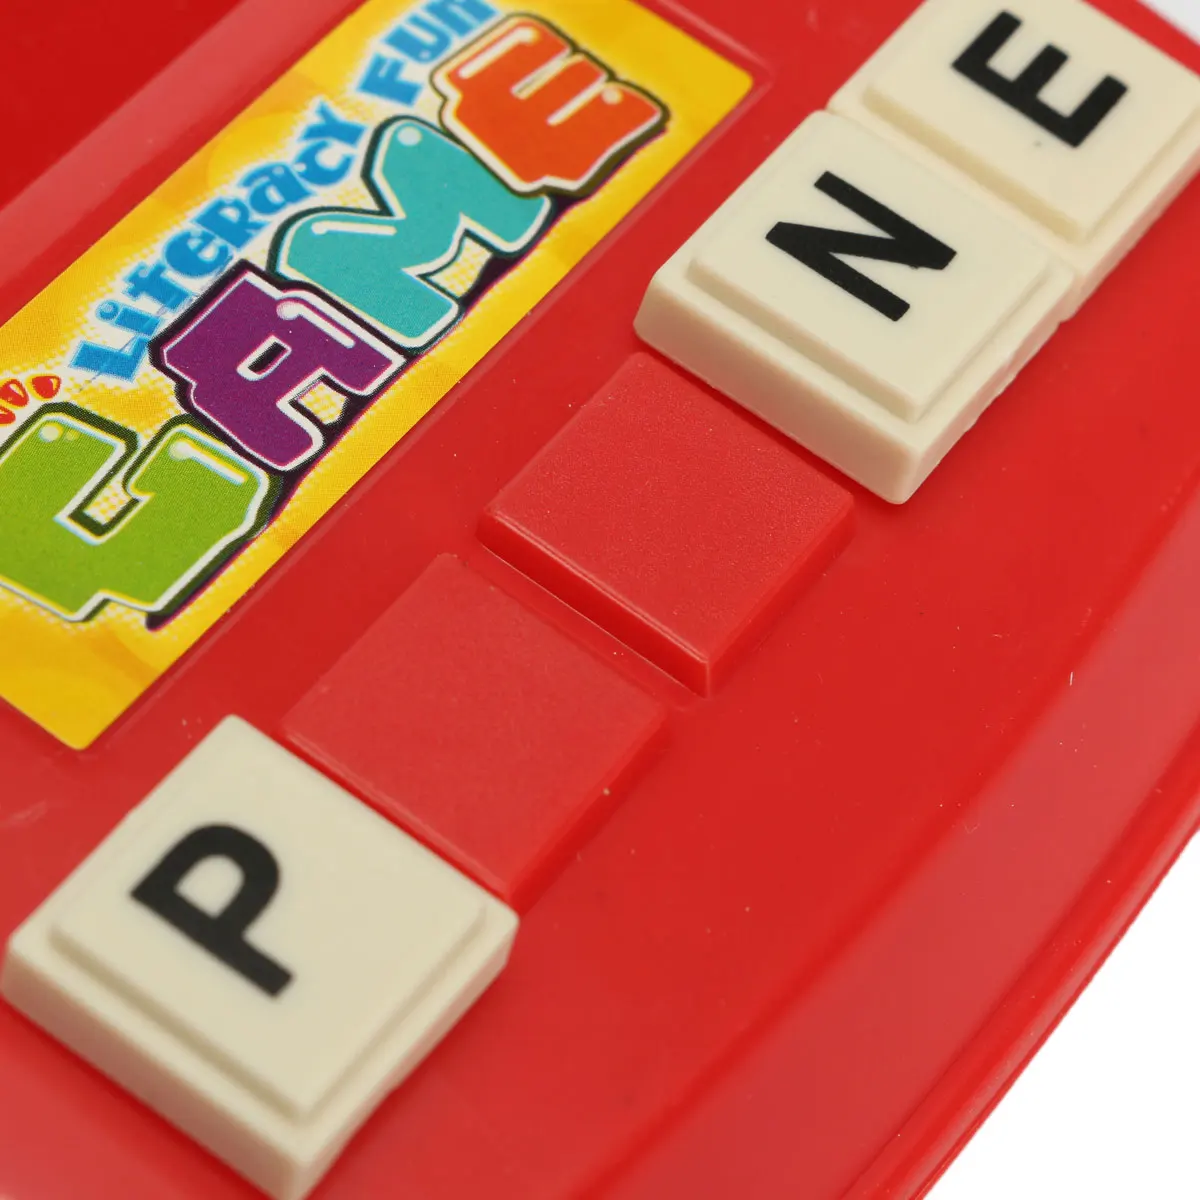 Английский Язык написания буквы алфавита набор для игр для раннего обучения по системе Монтессори Обучающие игрушки, пазлы игры подарки для детей